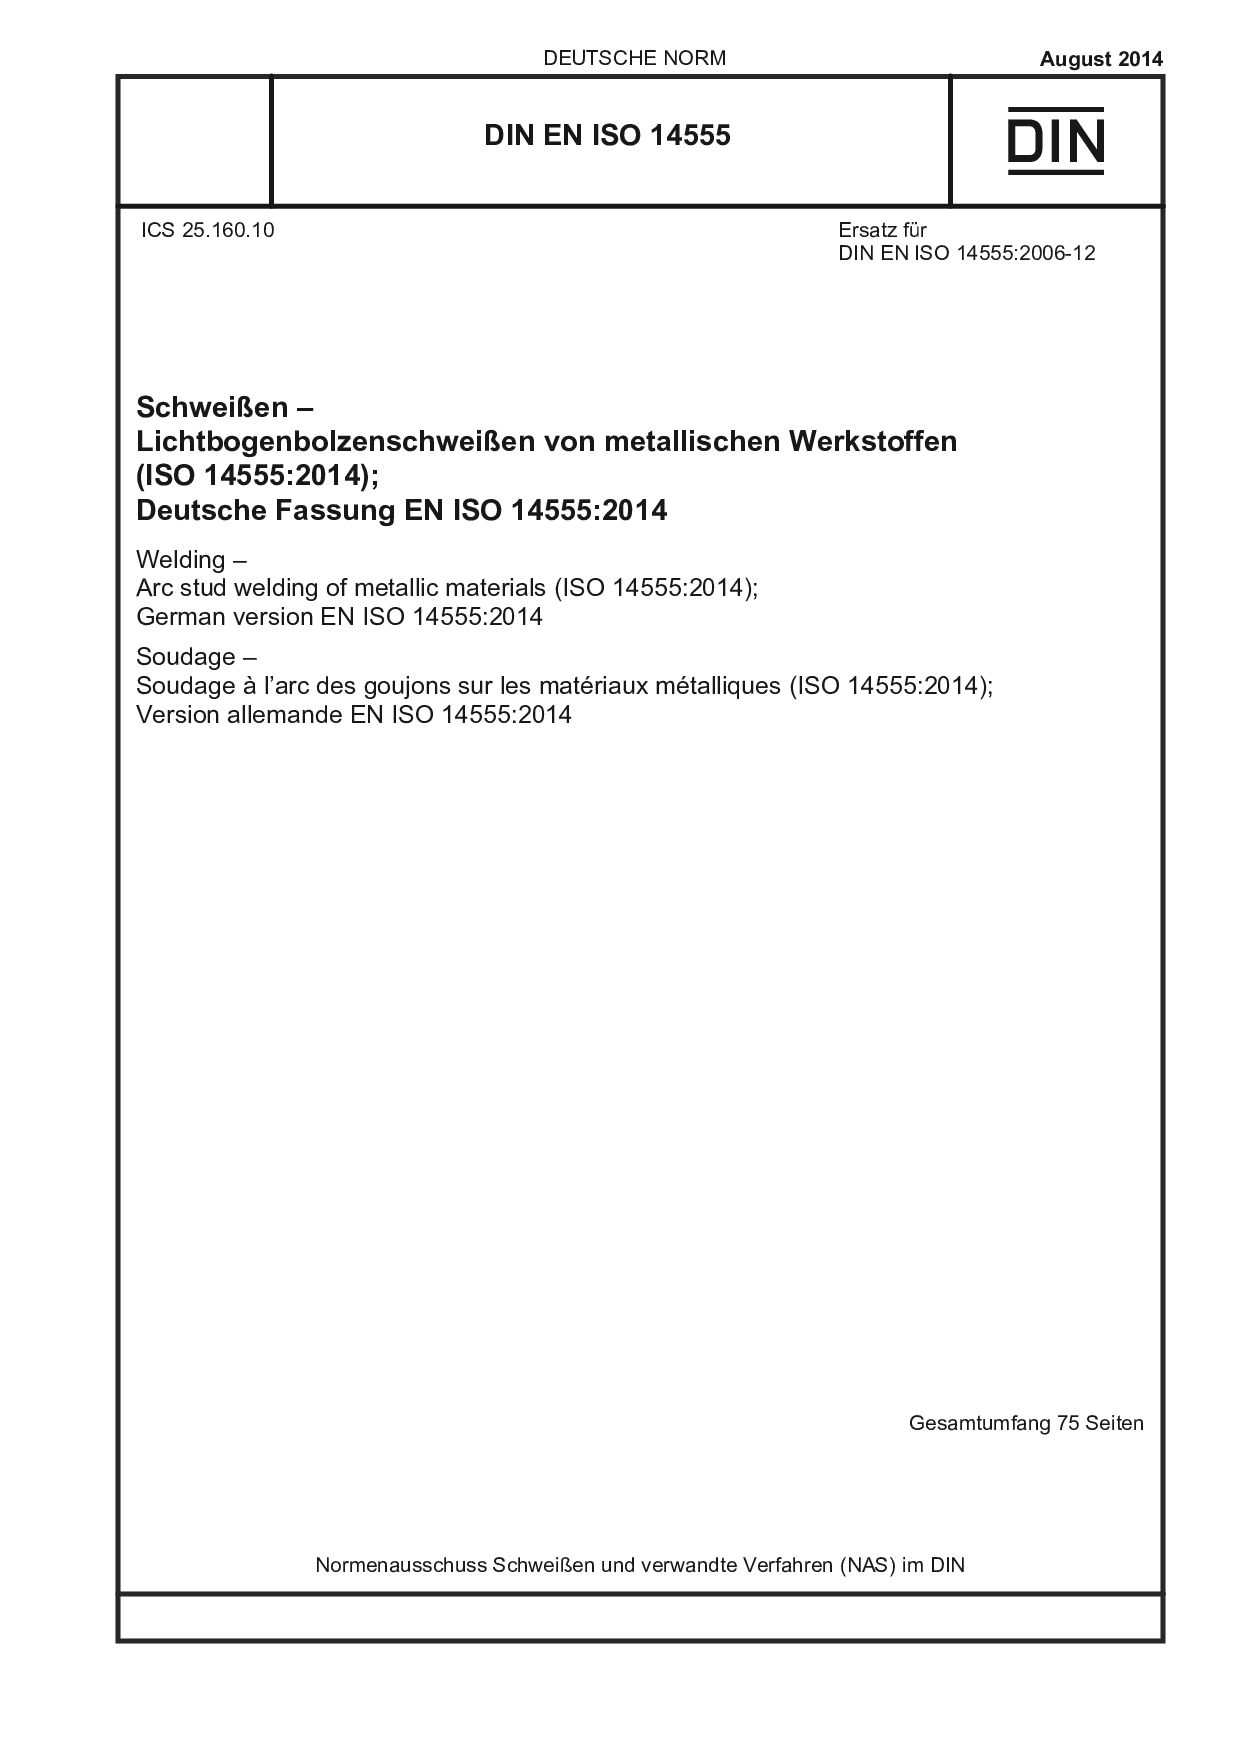 DIN EN ISO 14555:2014封面图